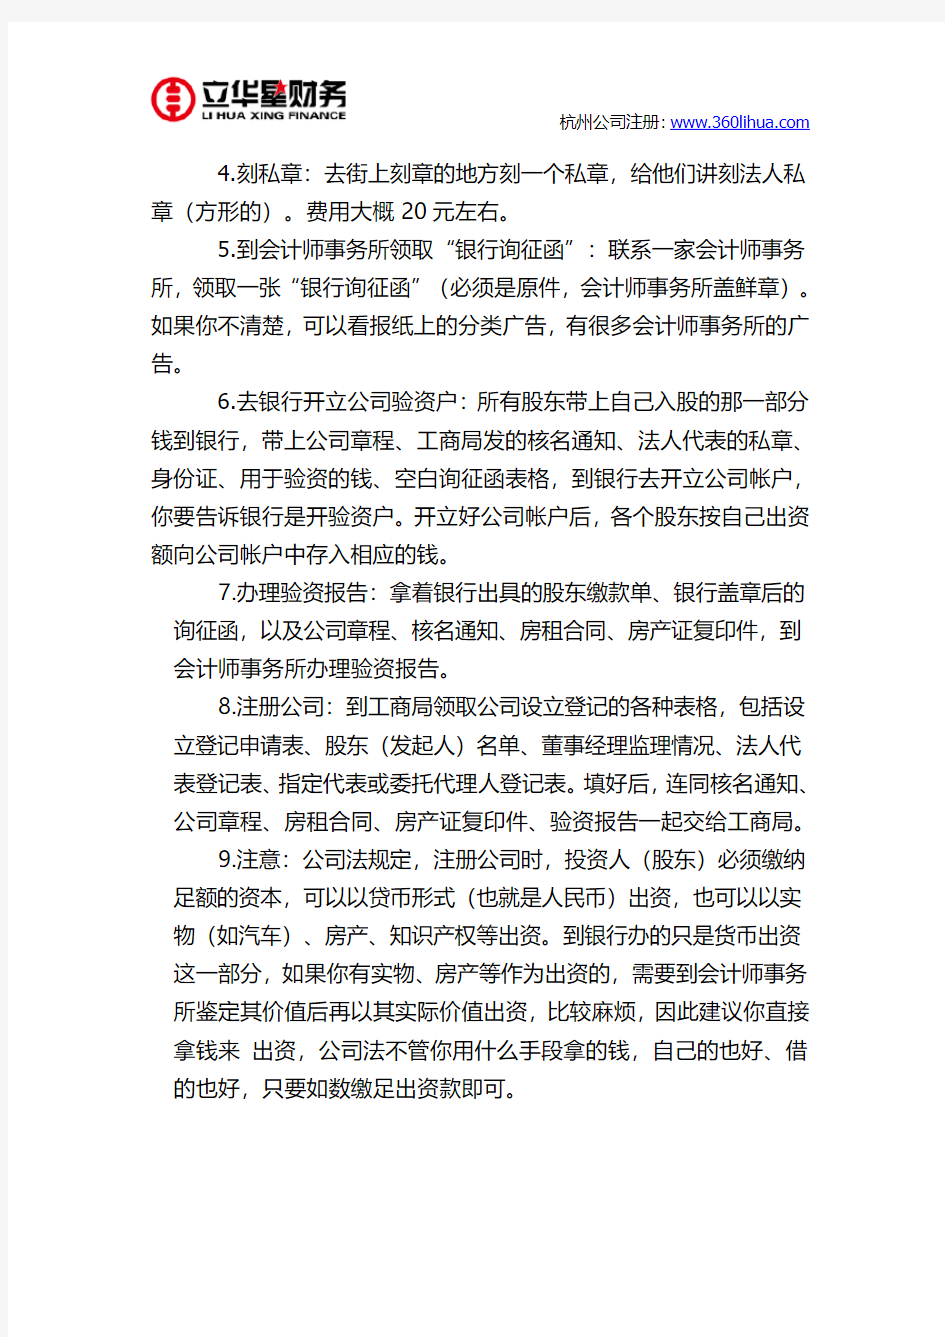 杭州新开餐厅工商注册要求